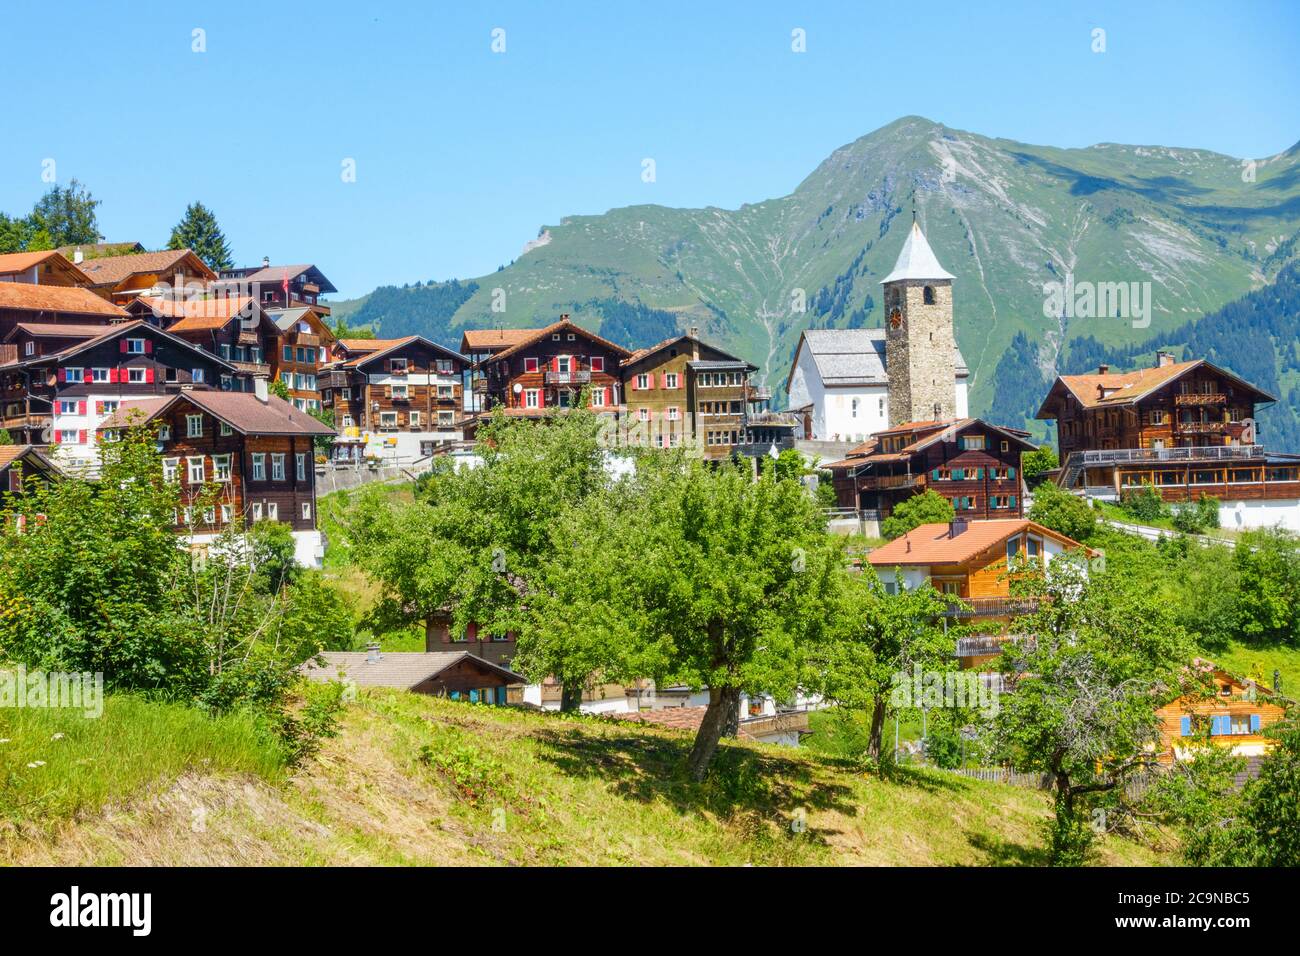 La ville classique de Tschiertschen à Arosa, en Suisse. La scène montre les bâtiments historiques en bois, qui sont typiques pour la Suisse Banque D'Images